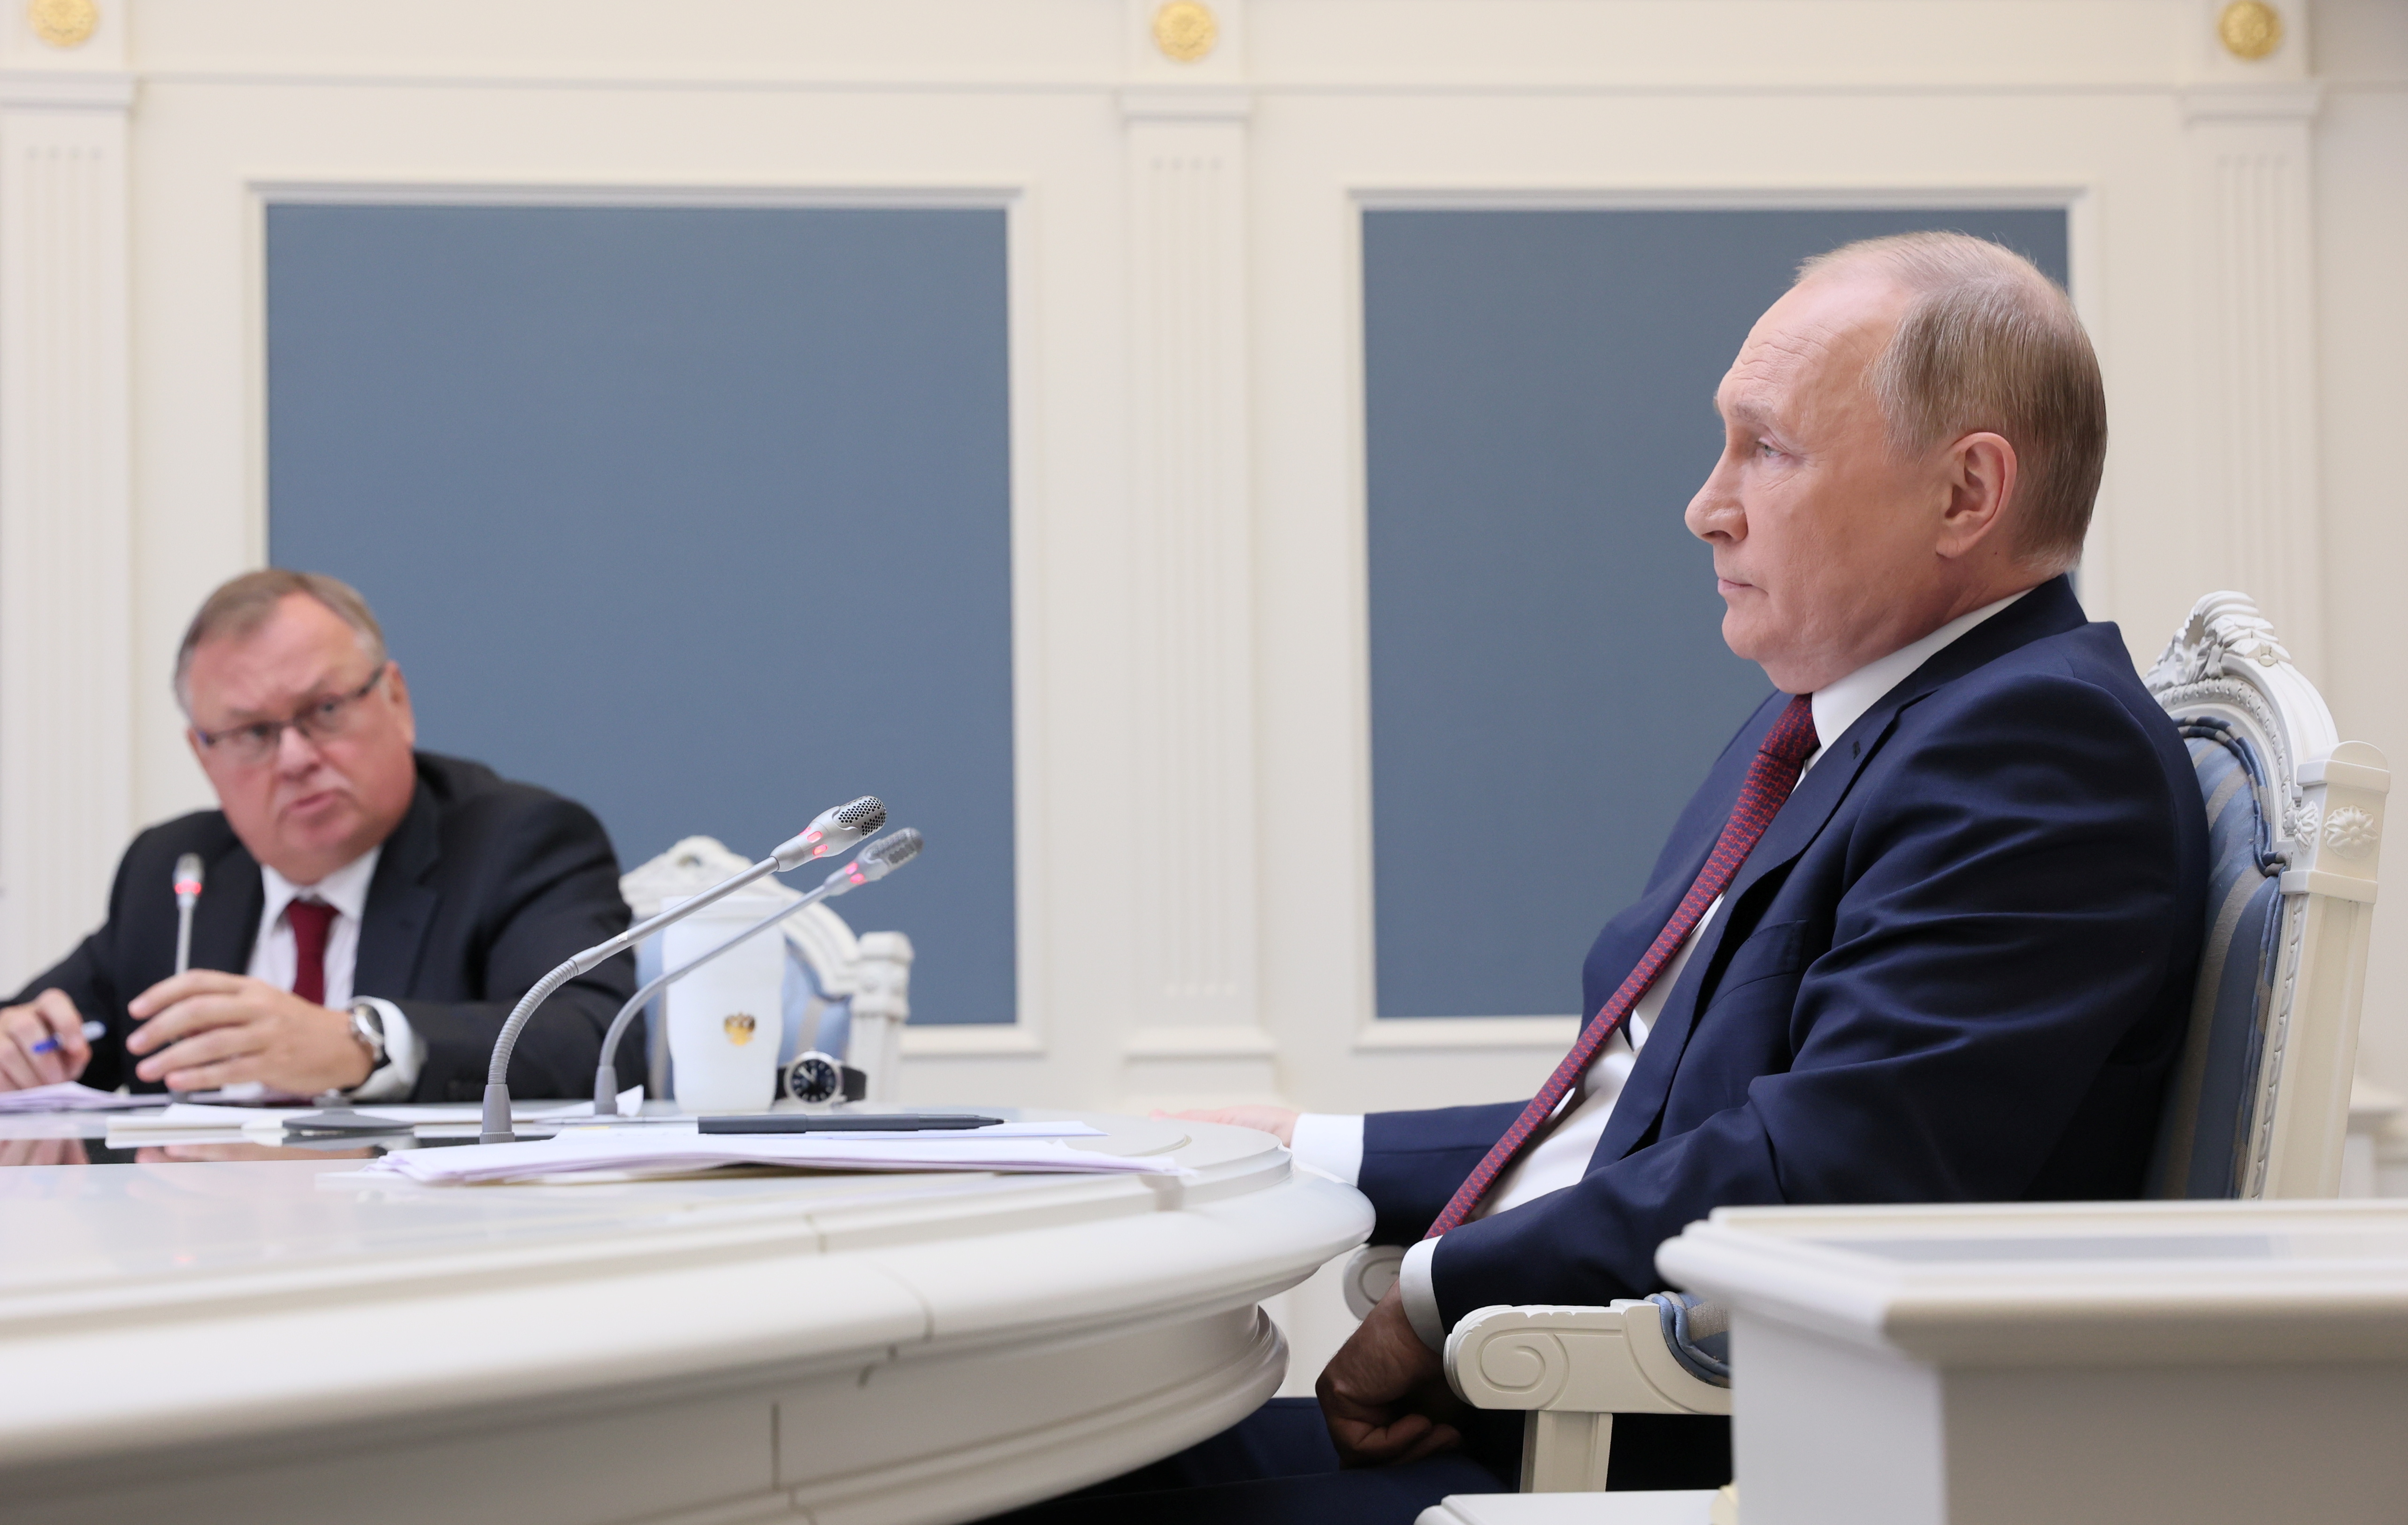 Rusijos prezidentas Vladimiras Putinas ir VTB banko generalinis direktorius Andrejus Kostinas dalyvauja VTB kapitalo investicijų forumo „Russia Calling!“ sesijoje. per konferencinį vaizdo skambutį Maskvoje, Rusijoje, 30 m. lapkričio 2021 d. Sputnik/Michailas Metzelis/Pool per REUTERS